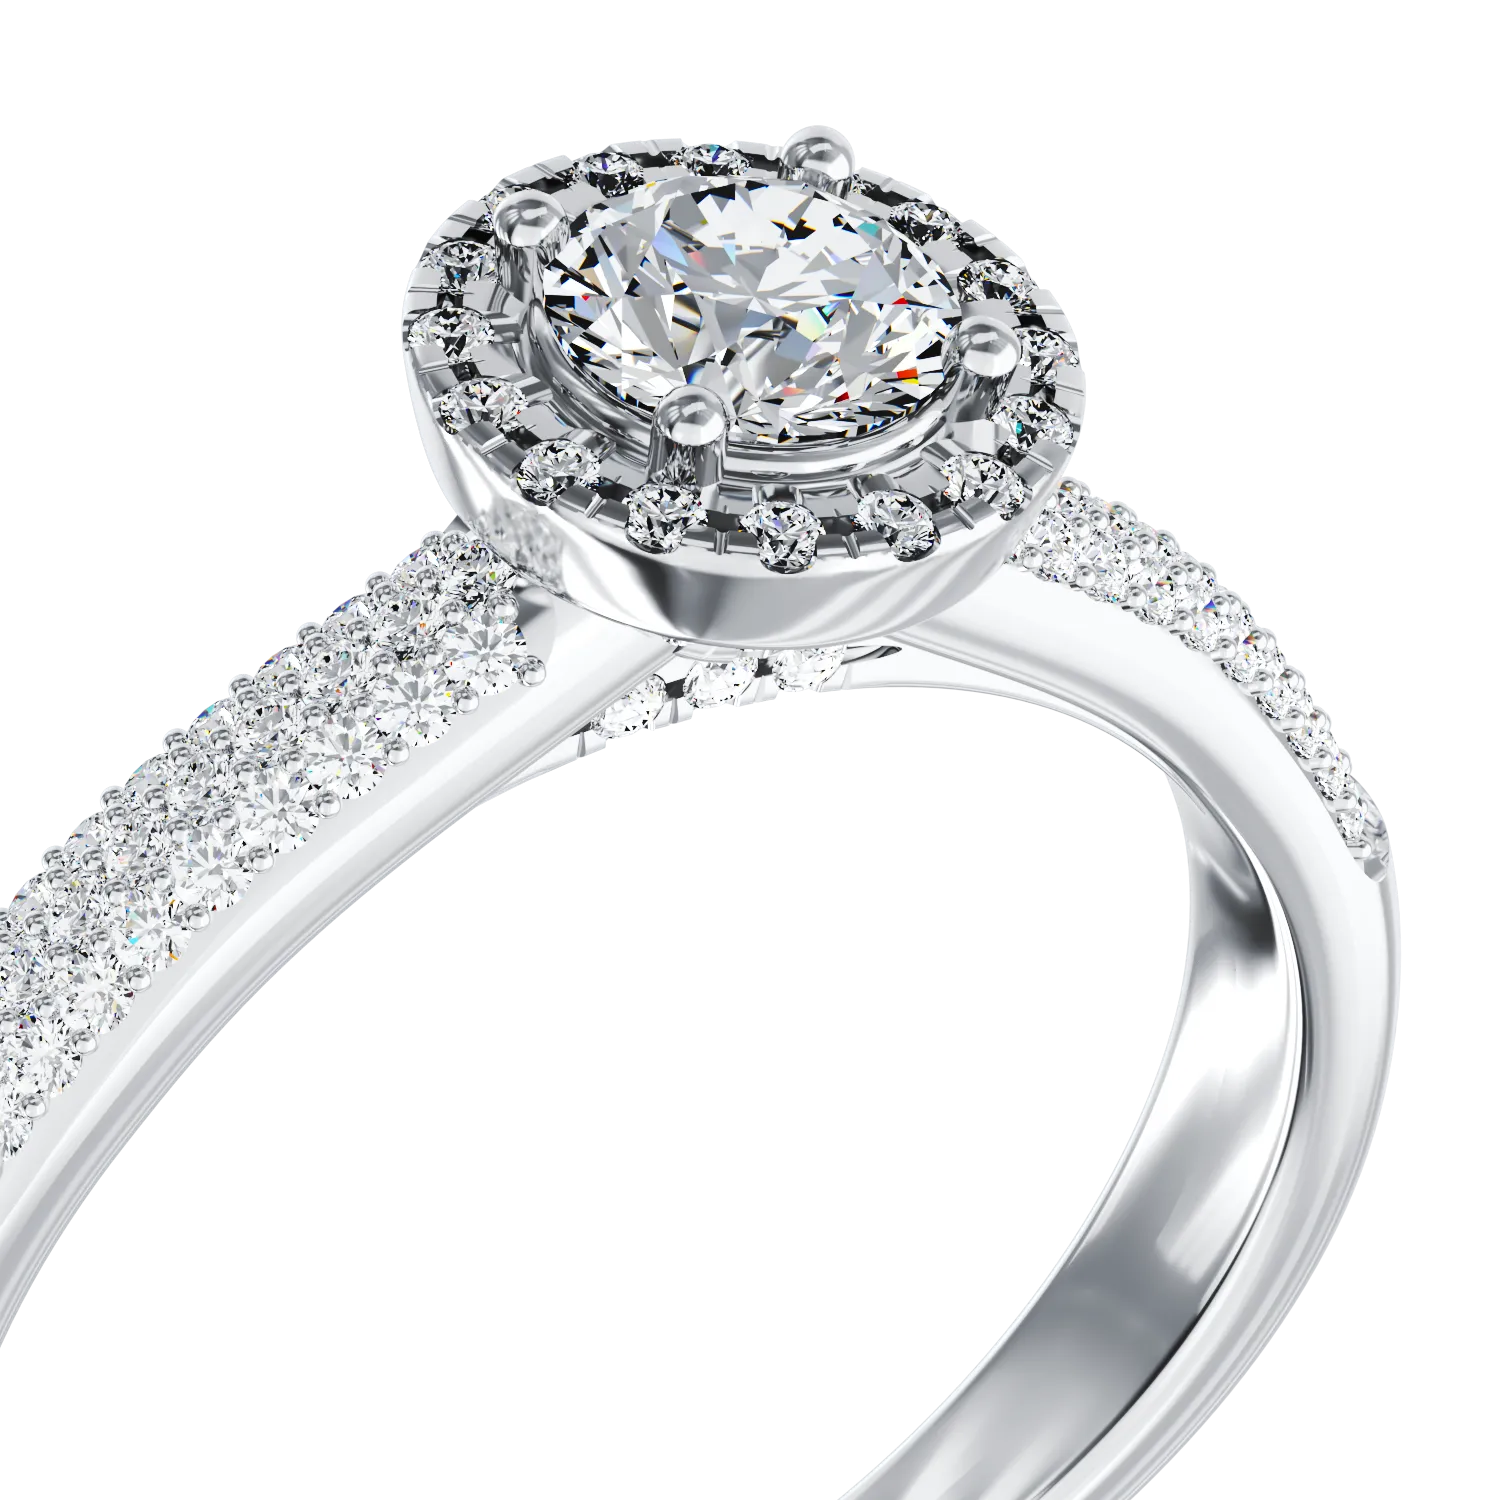 Eljegyzési gyűrű 18K-os fehér aranyból 0,33ct gyémánttal és 0,36ct gyémánttal. Gramm: 3,51